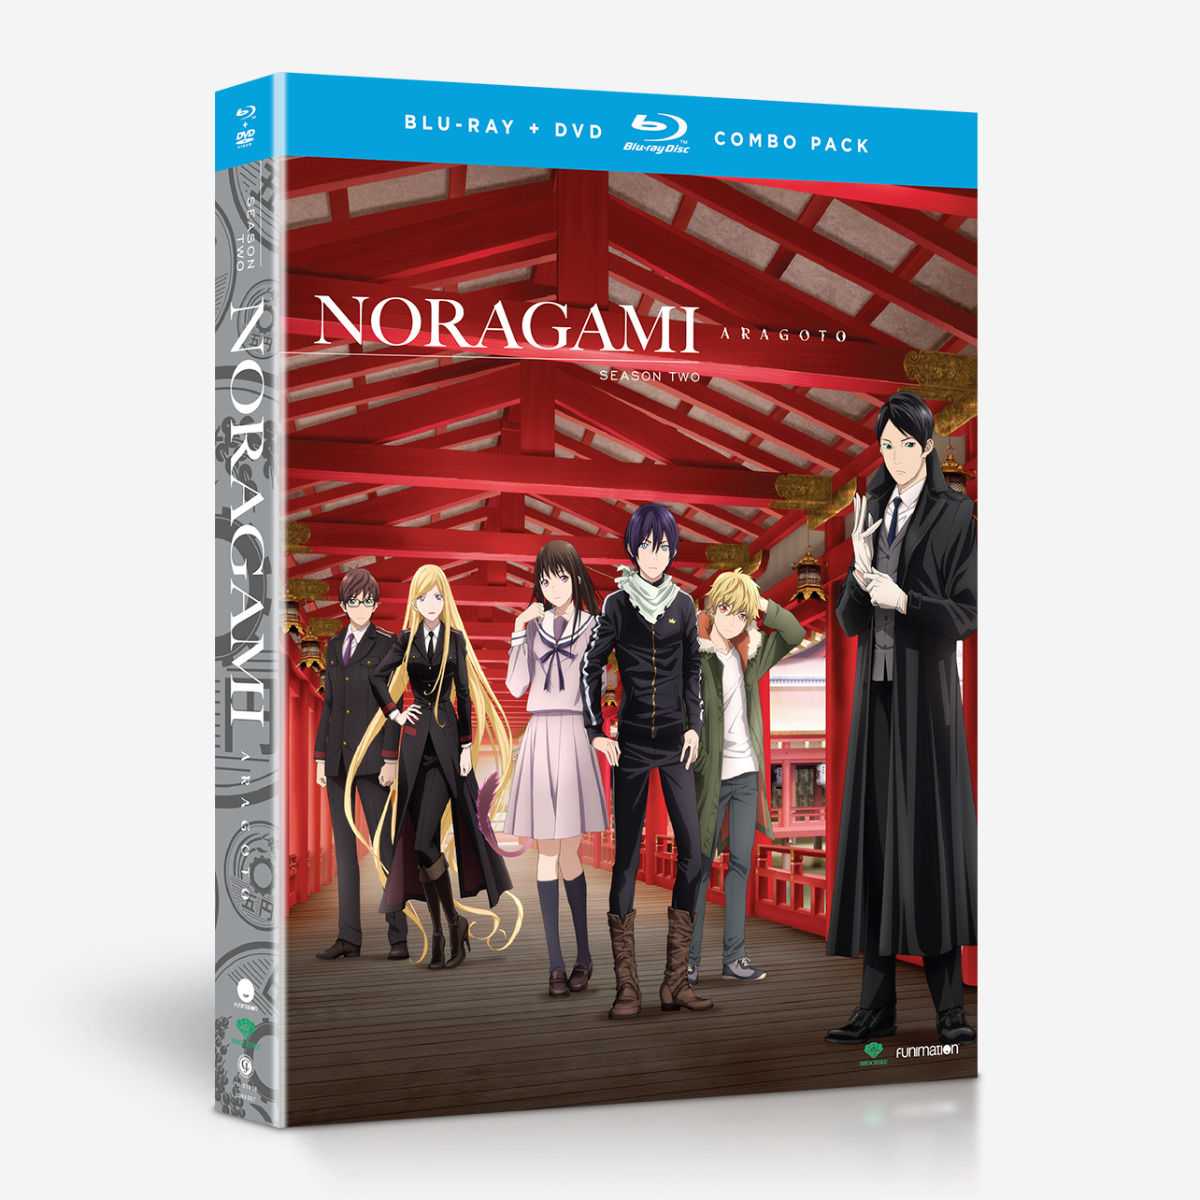 Multi Season - Noragami + Season 2 (Noragami Aragoto)